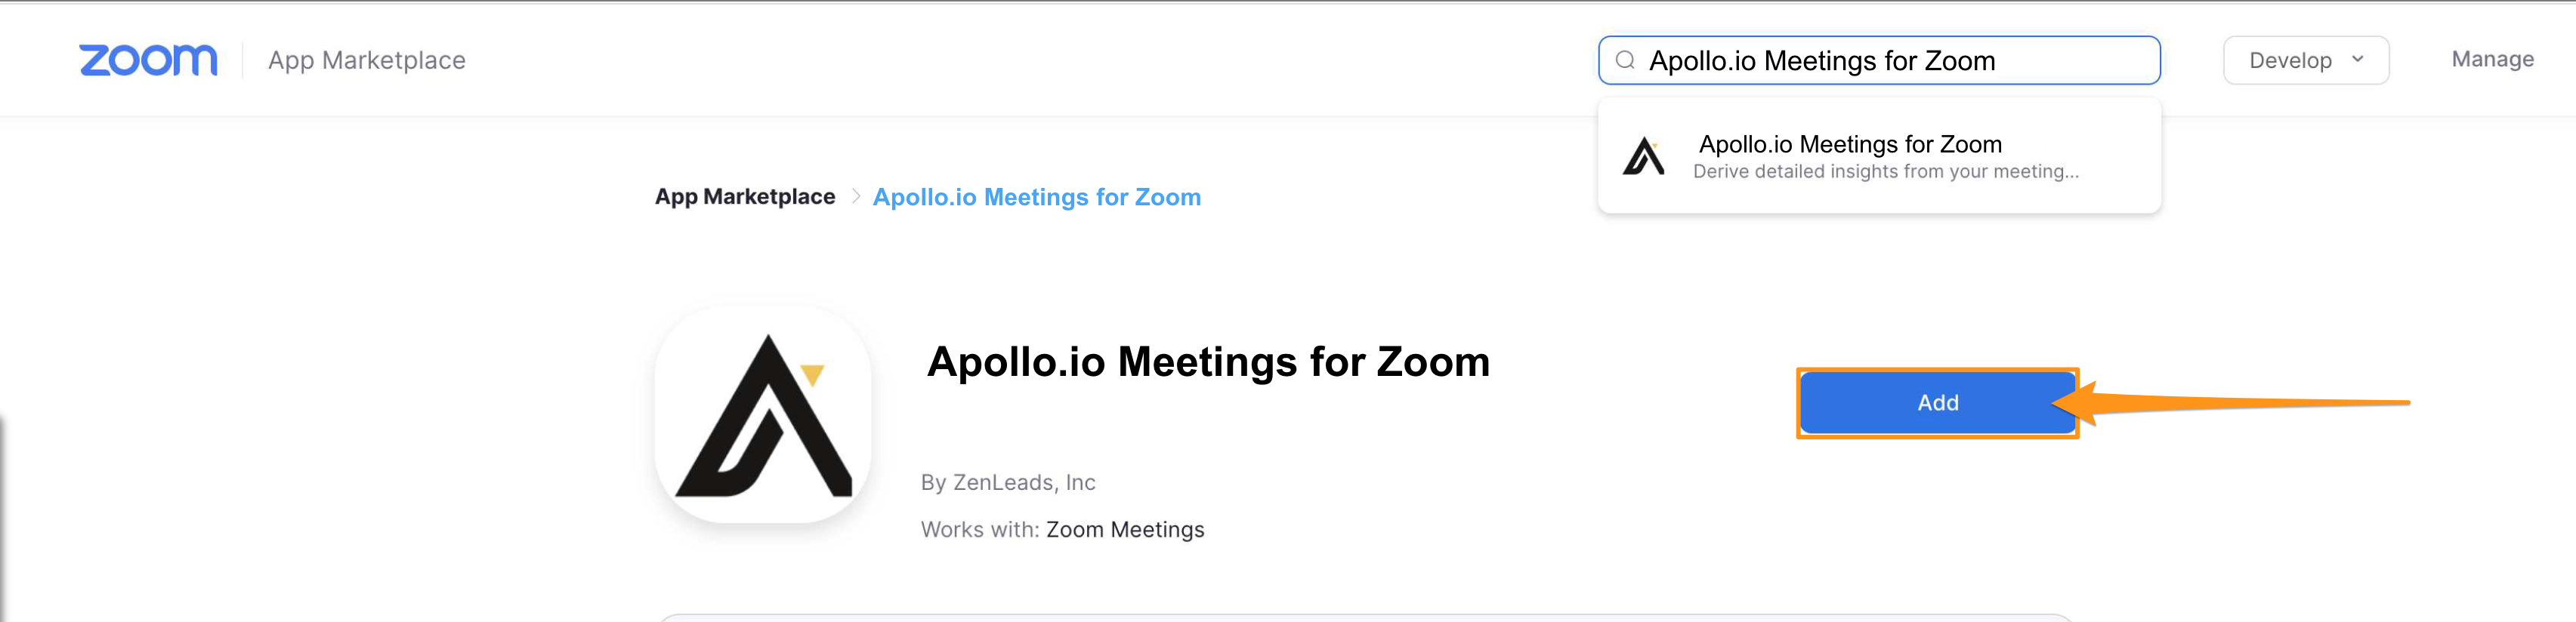 Add button next to Apollo Meetings